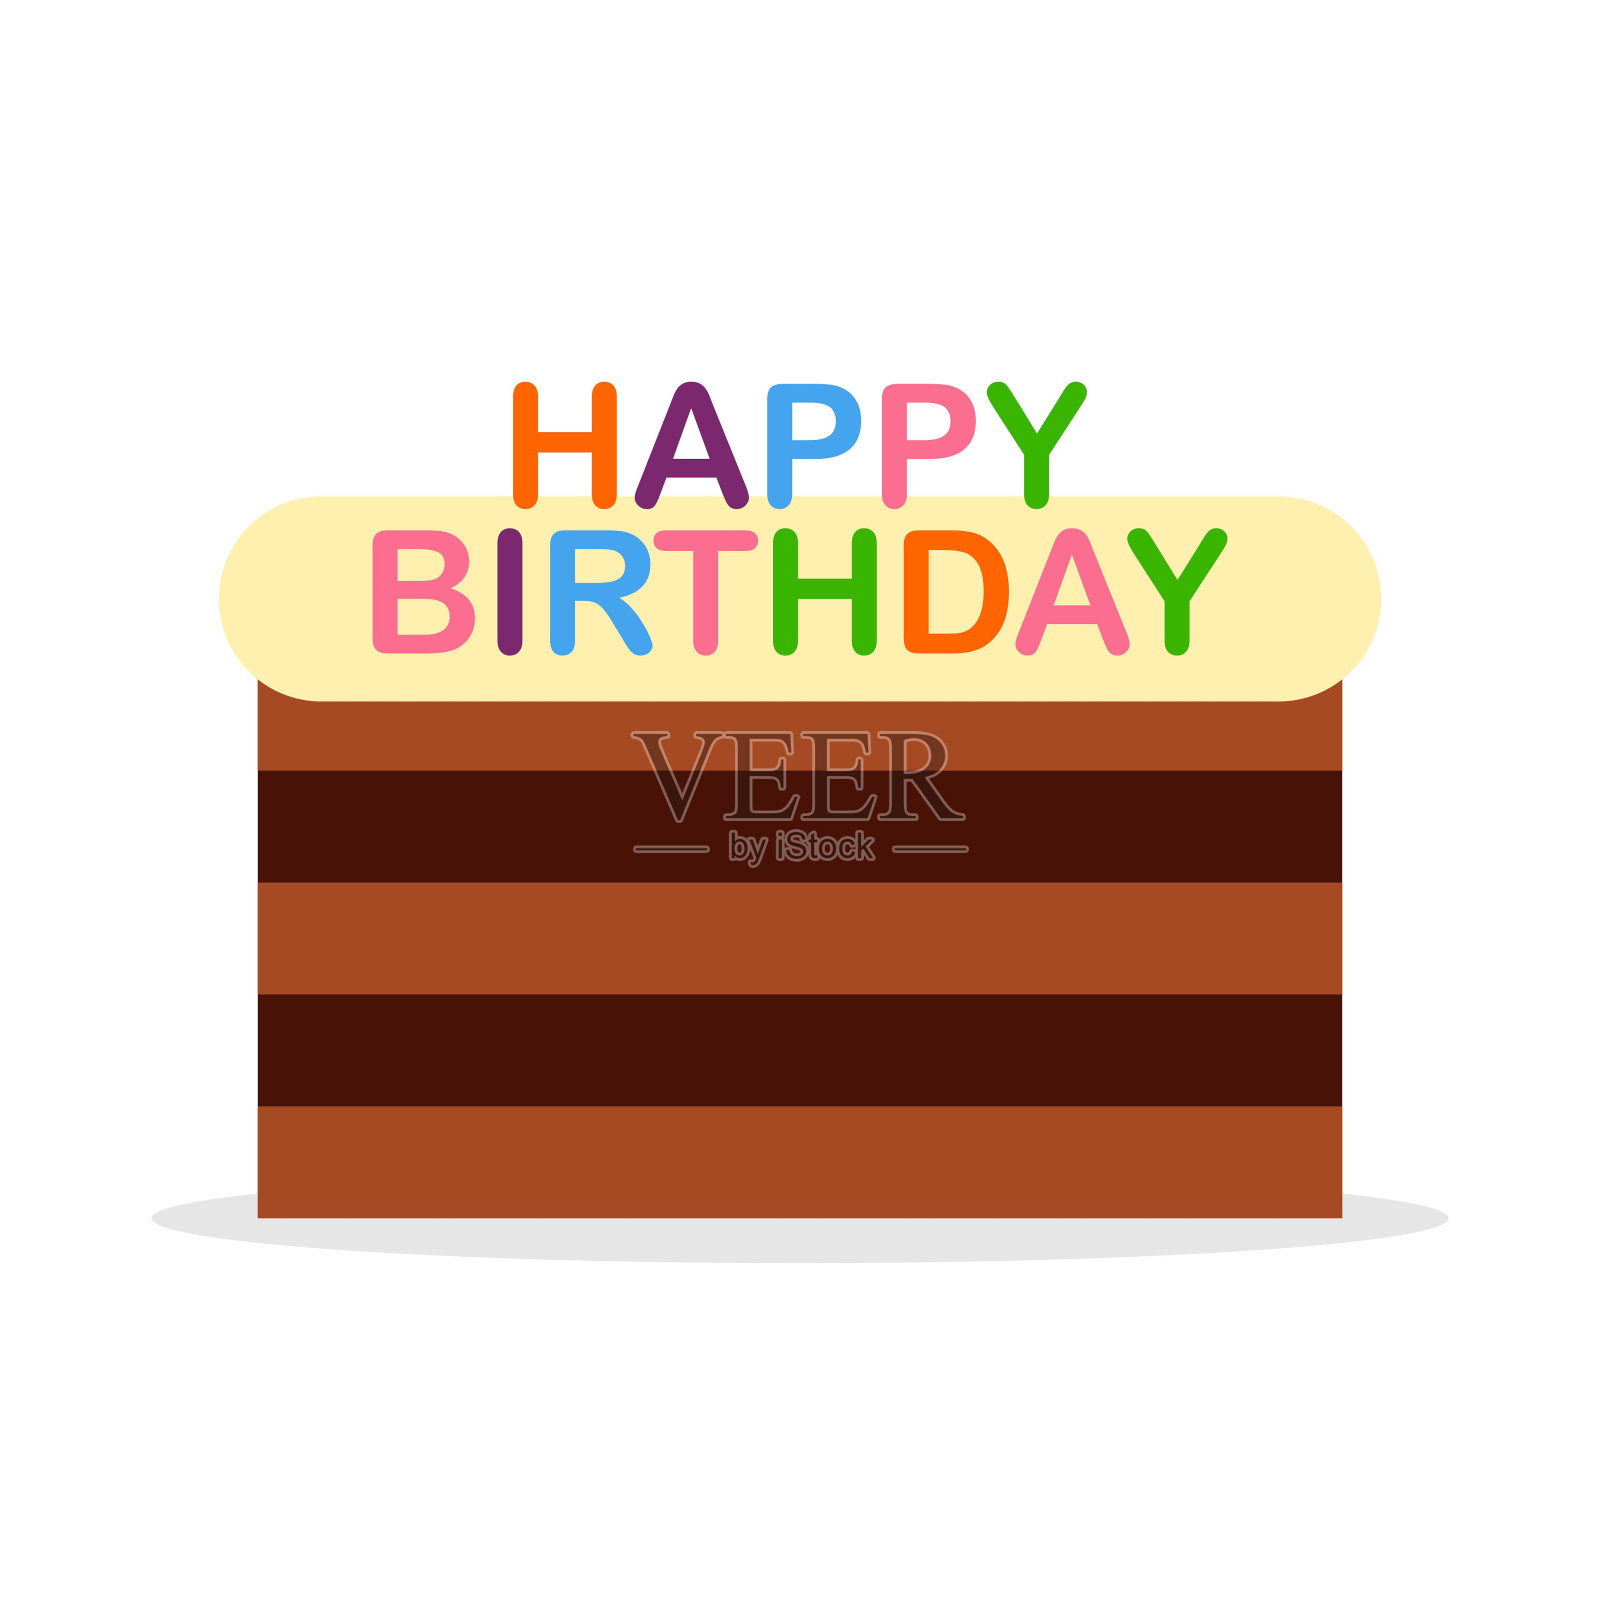 生日蛋糕与奶油平面图标孤立在白色背景上。上釉蛋糕，上面写着生日快乐。甜蜜的奶油馅饼。矢量图插画图片素材